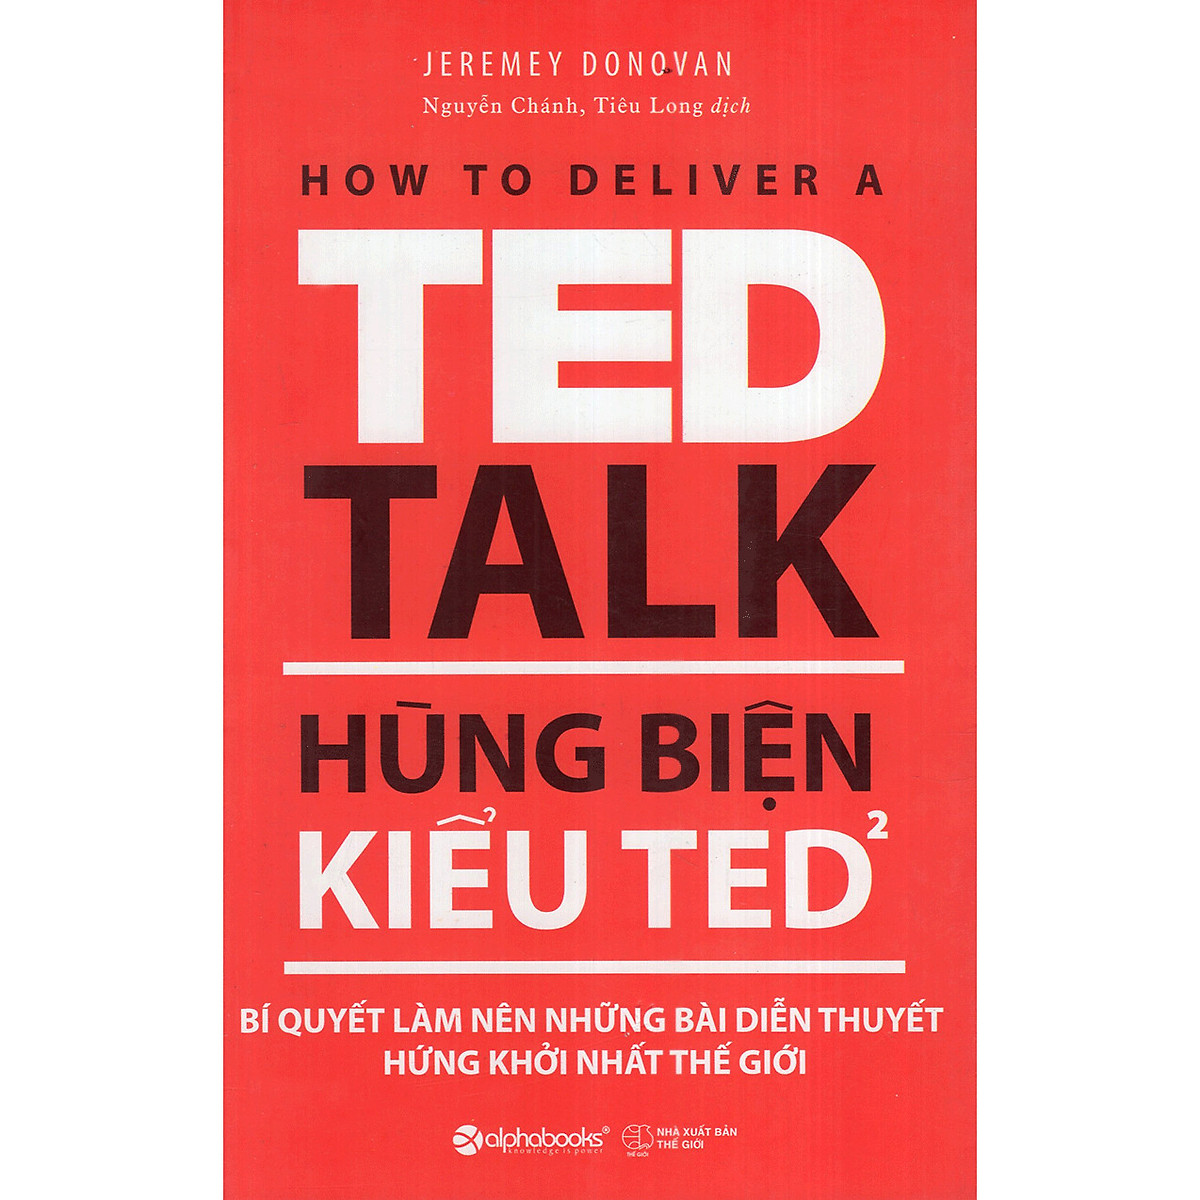 Hùng Biện Kiểu Ted 2 - Bí Quyết Làm Nên Những Bài Diễn Thuyết Hứng Khởi Nhất Thế Giới ( tặng kèm bookmark Tuyệt Đẹp )